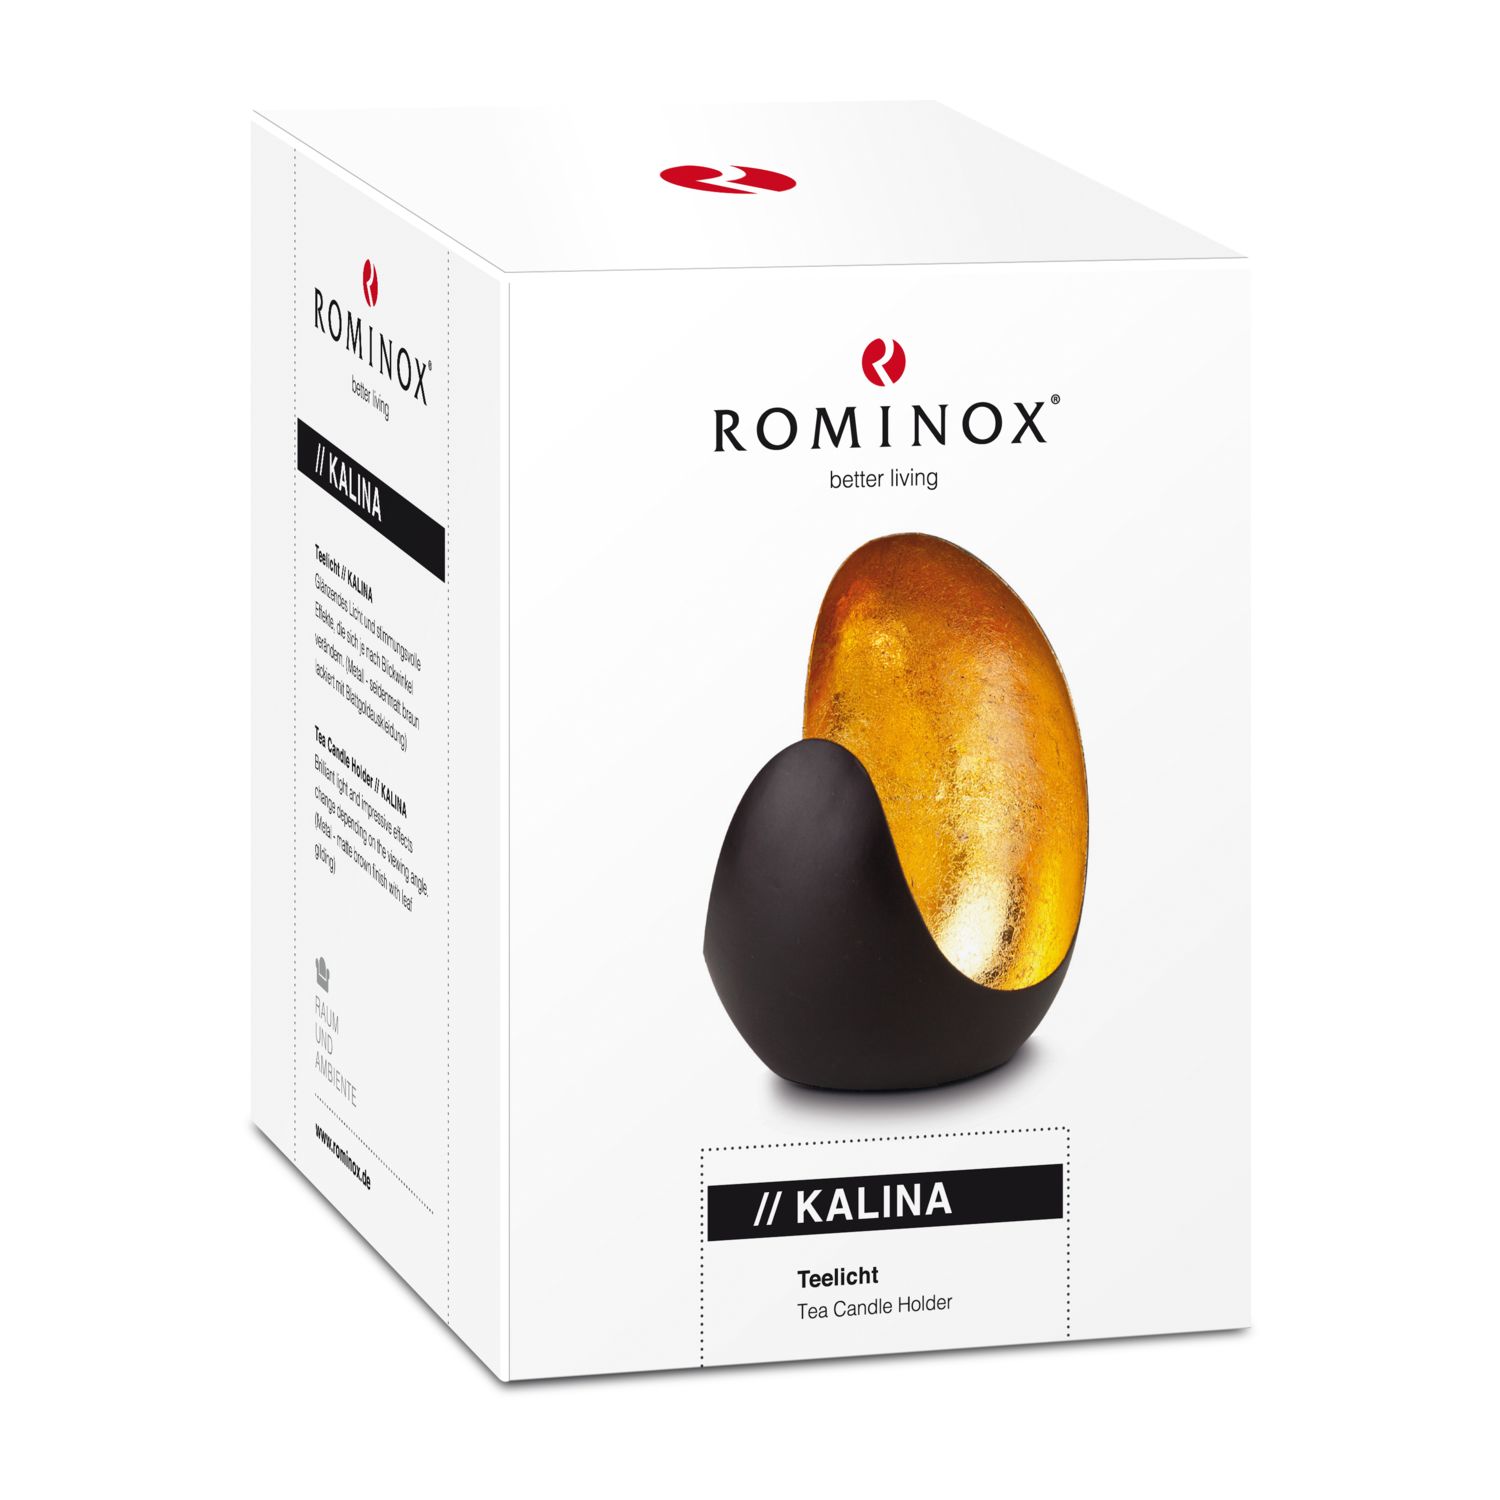 ROMINOX® Teelicht // KALINA